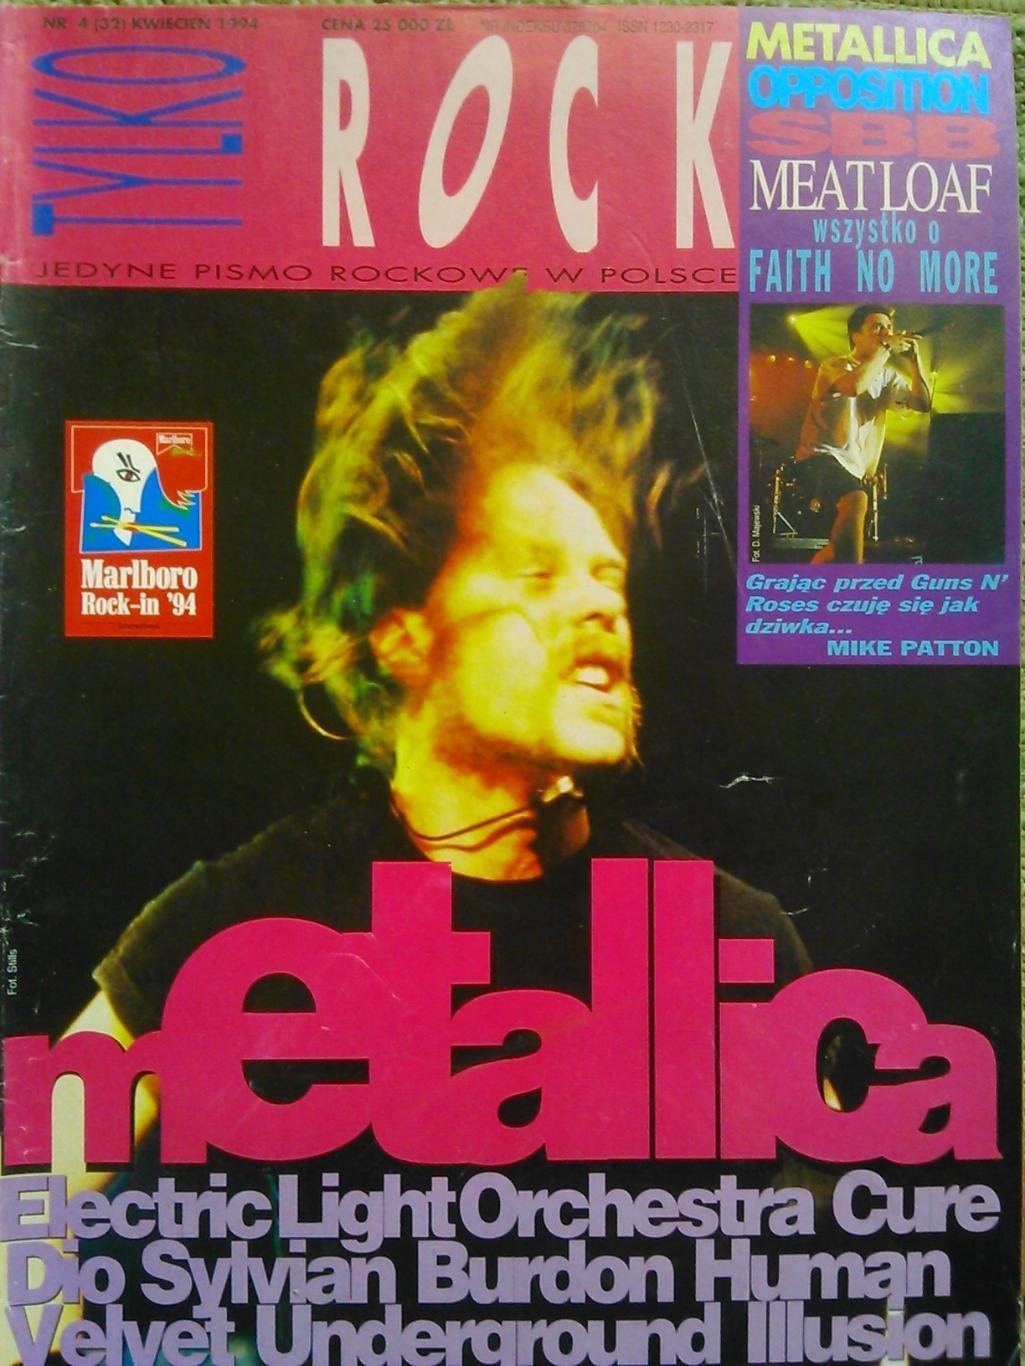 TYLKO ROCK (Только Рок) №4 (32) 1994. Польша. METALLICA. Оптом скидки до 50%.